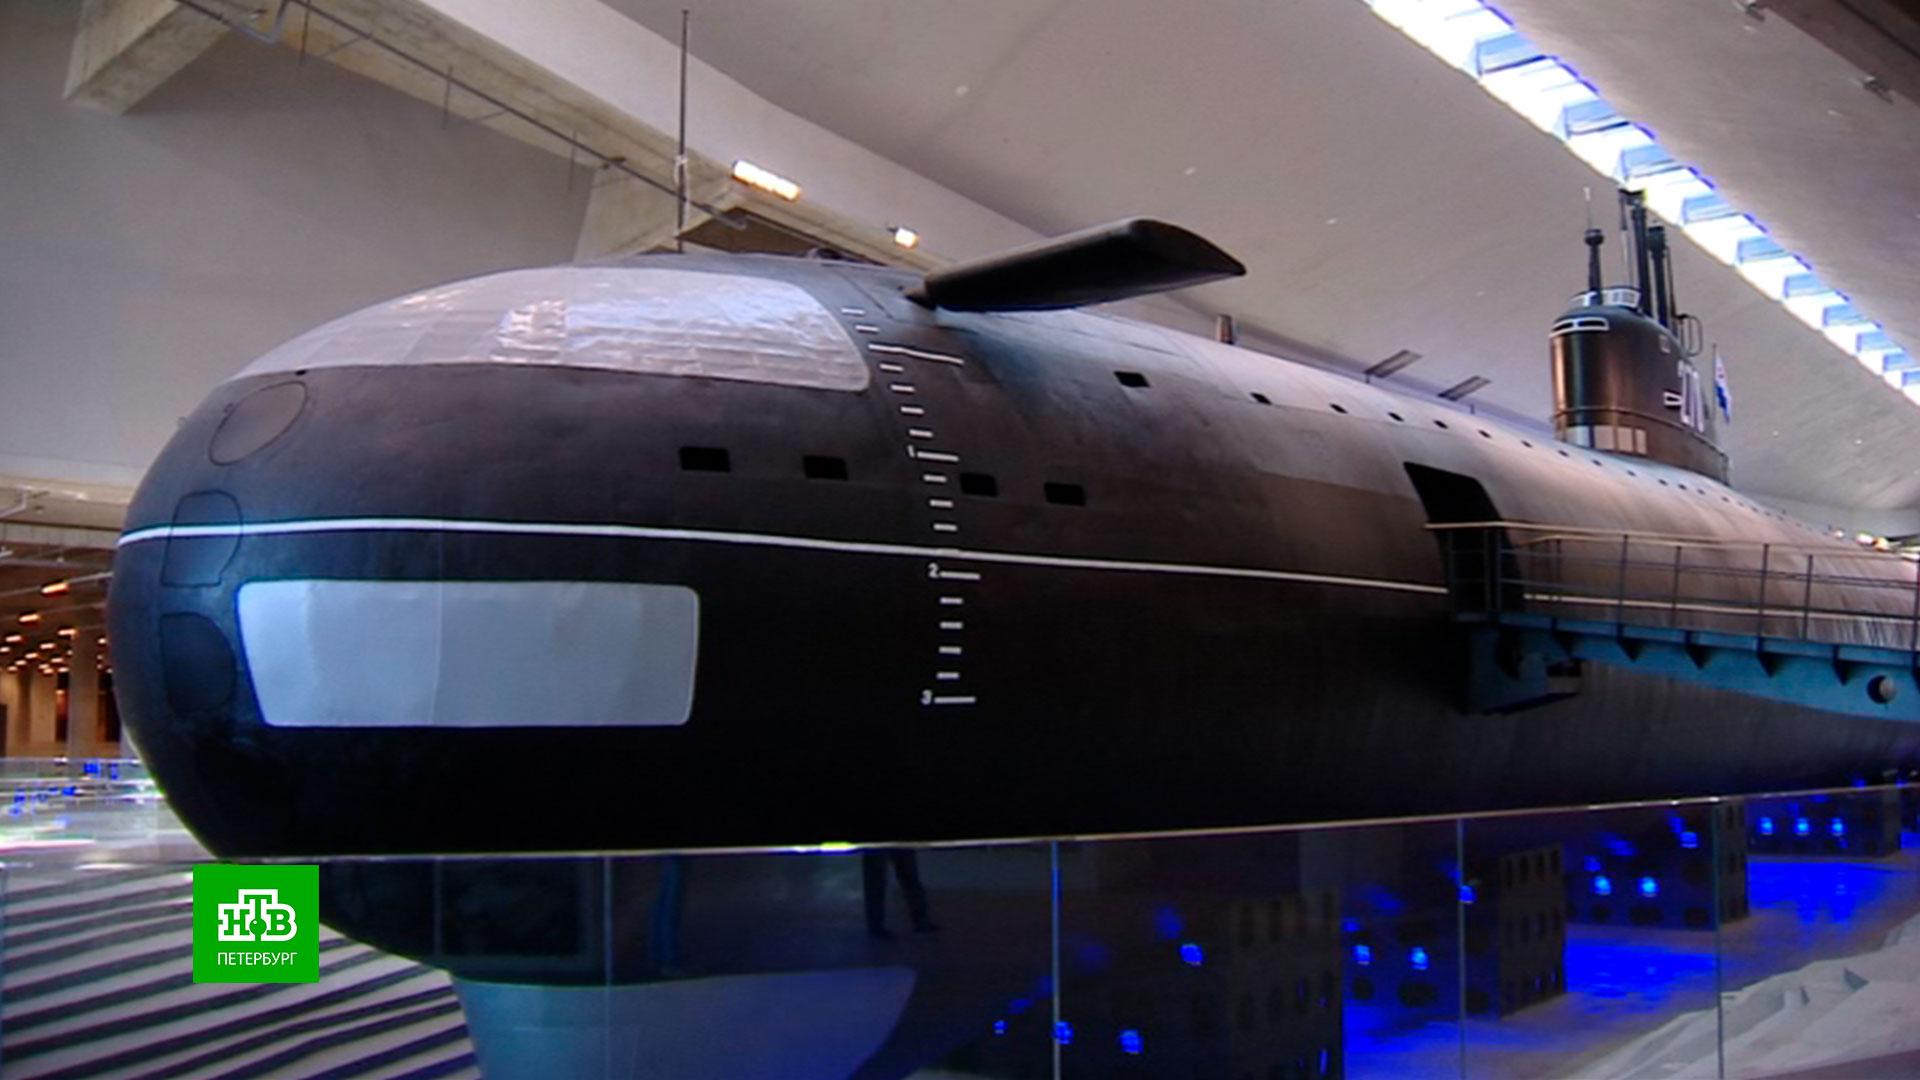 Кронштадт подводная лодка режим работы. Подводная лодка Ленинский комсомол в Кронштадте музей. Музей подводная лодка в Кронштадте. Подводная лодка в Кронштадте музей к-3. Музей АПЛ В Кронштадте.